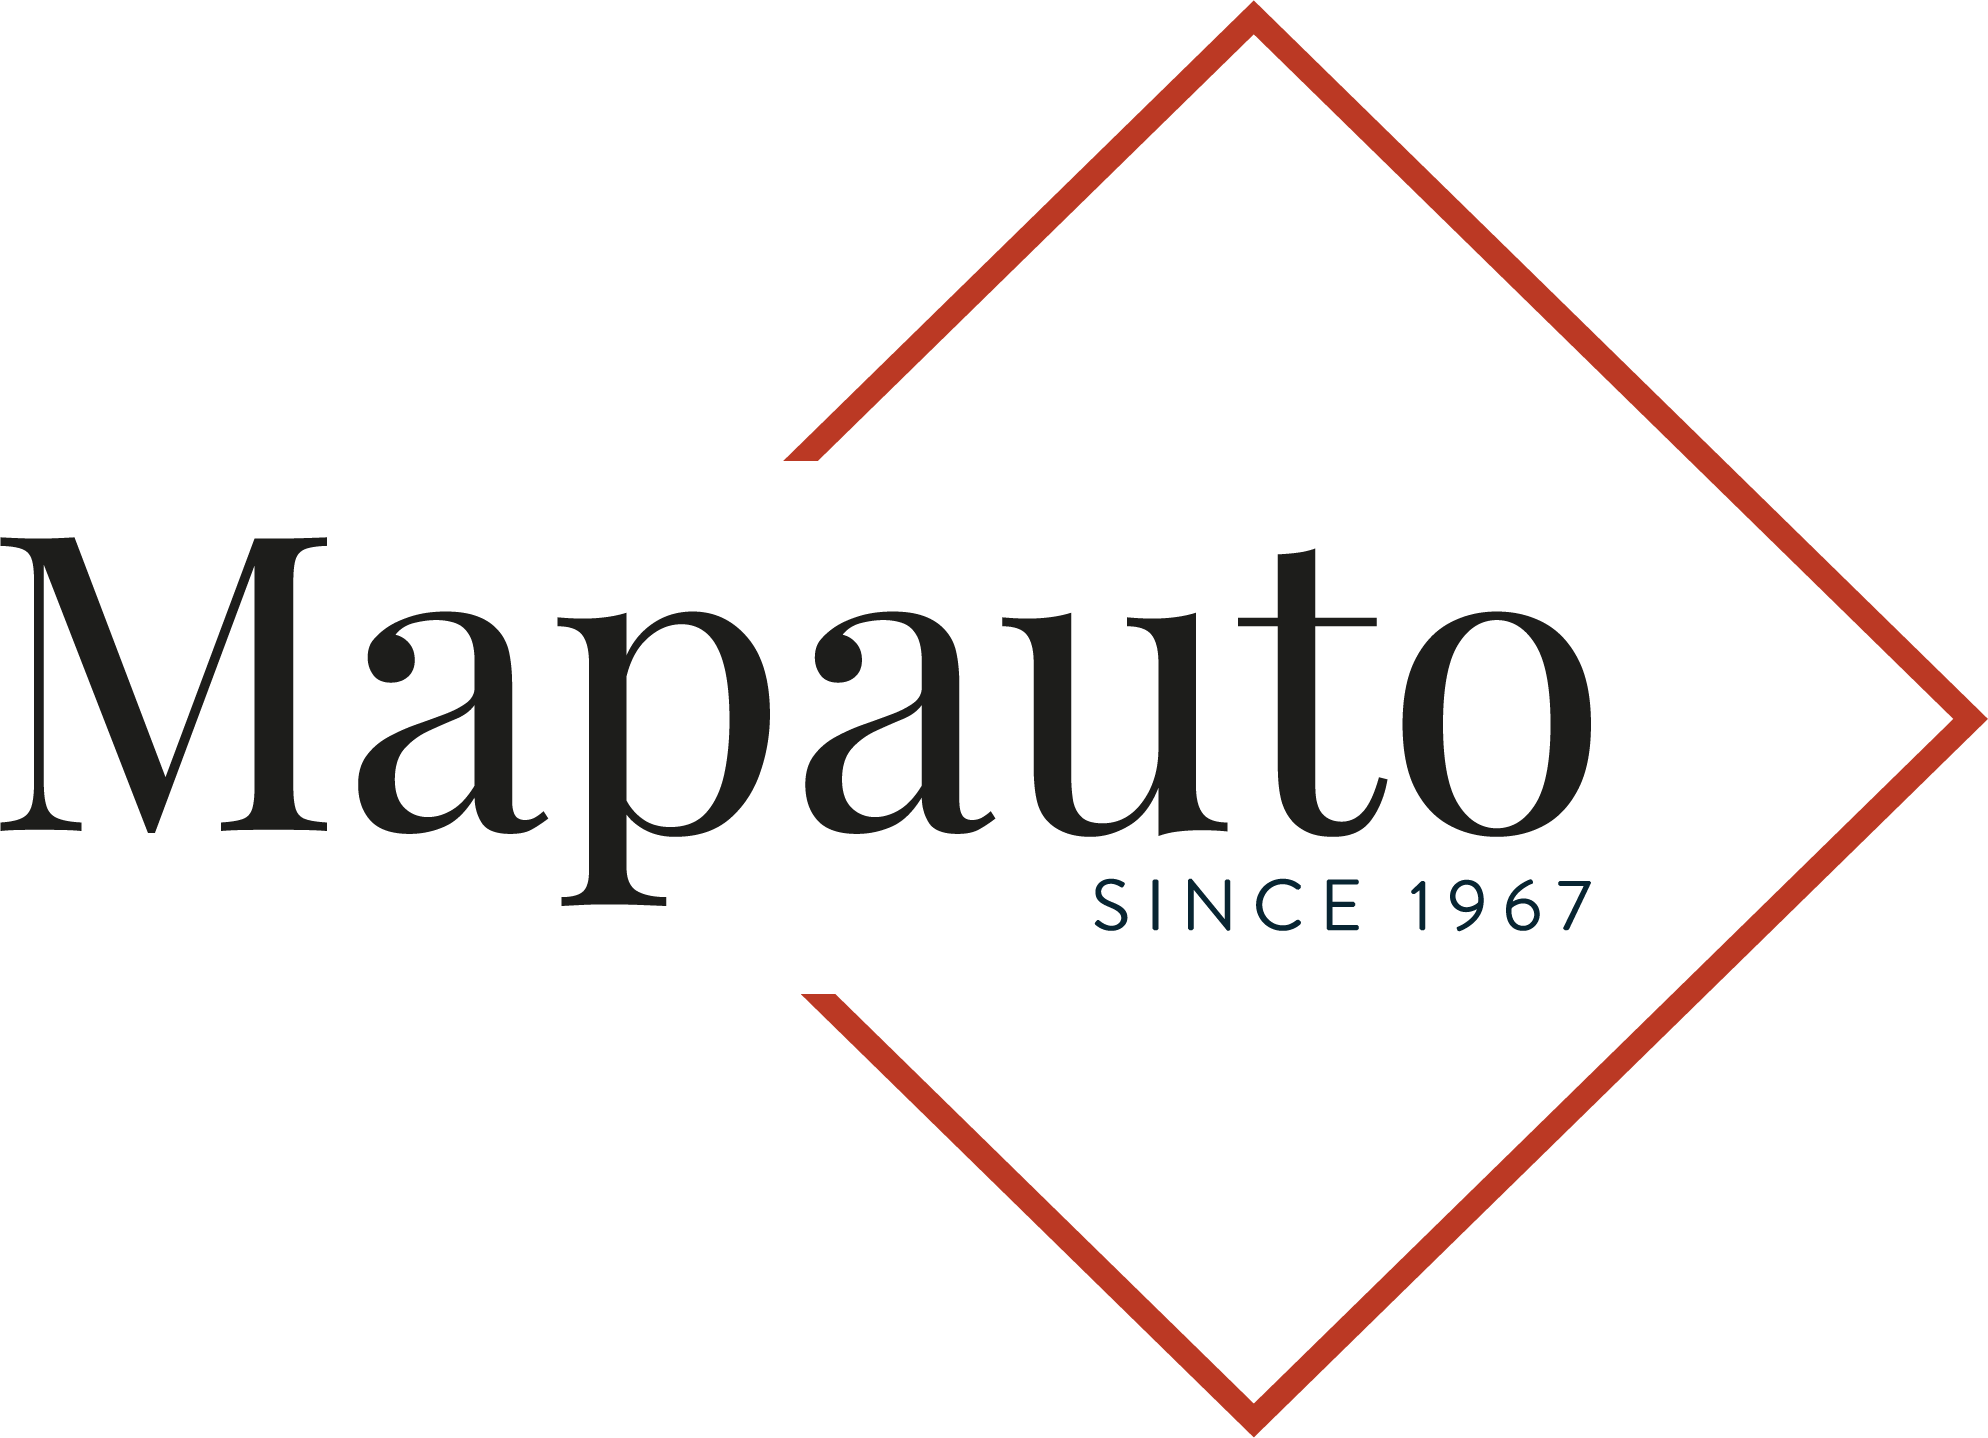 MAPAUTO 2021 logo